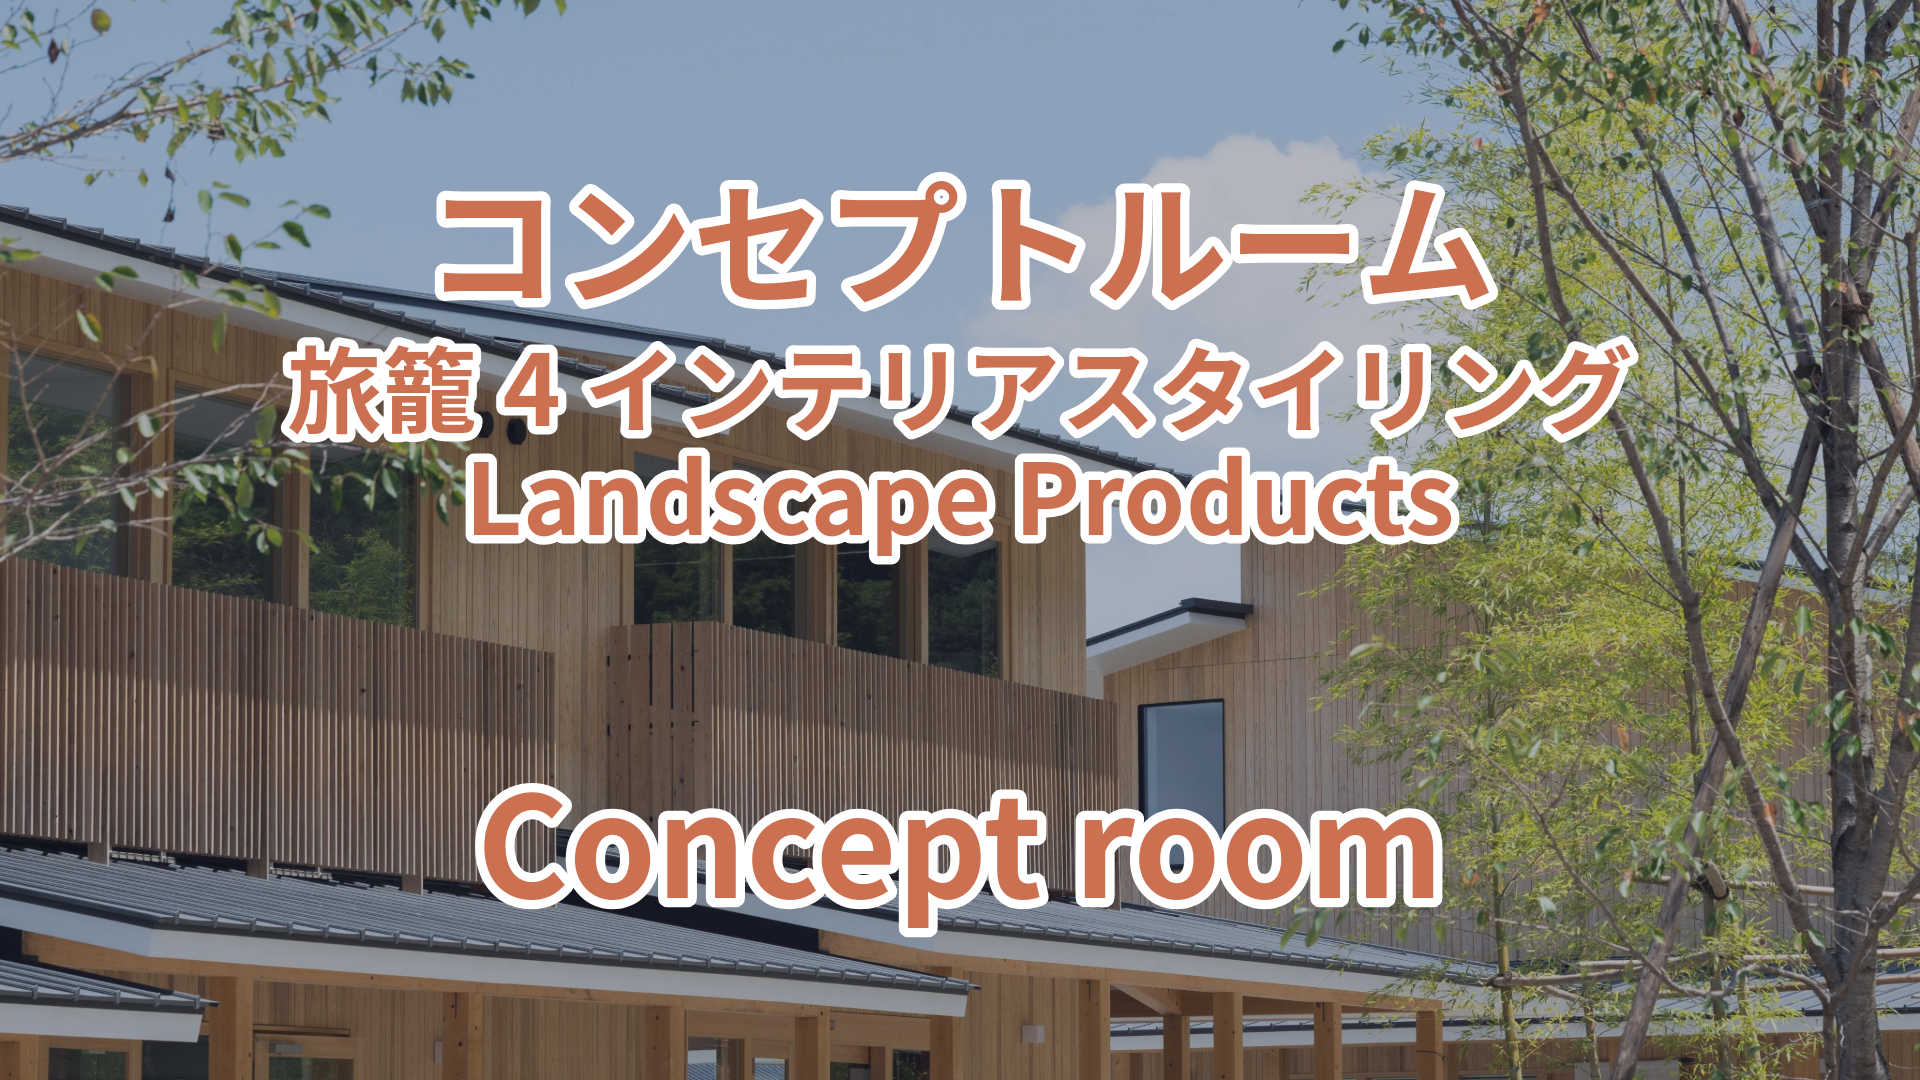 コンセプトルーム 旅籠4 インテリアスタイリング Landscape Products